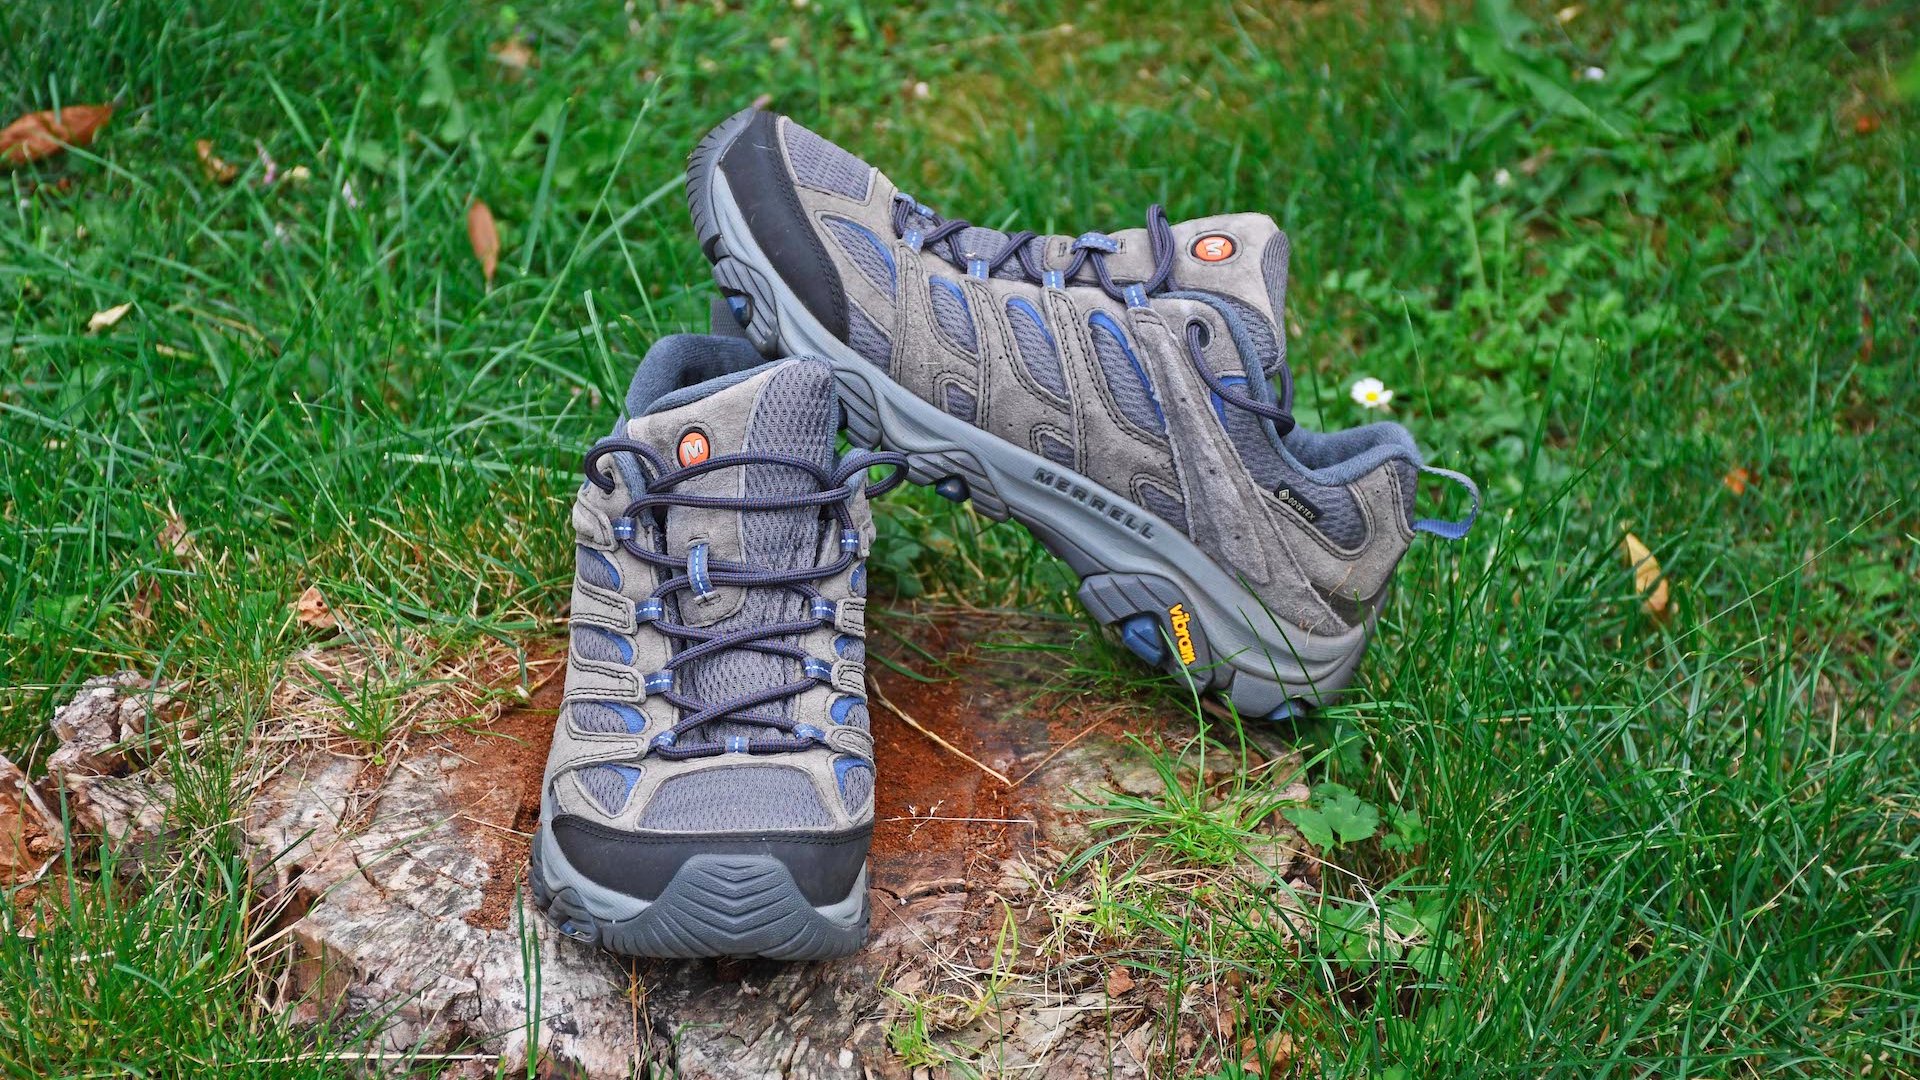 Merrell Moab 3 GTX Men Lightweight Hiking Shoe for Men's Goretex Navy